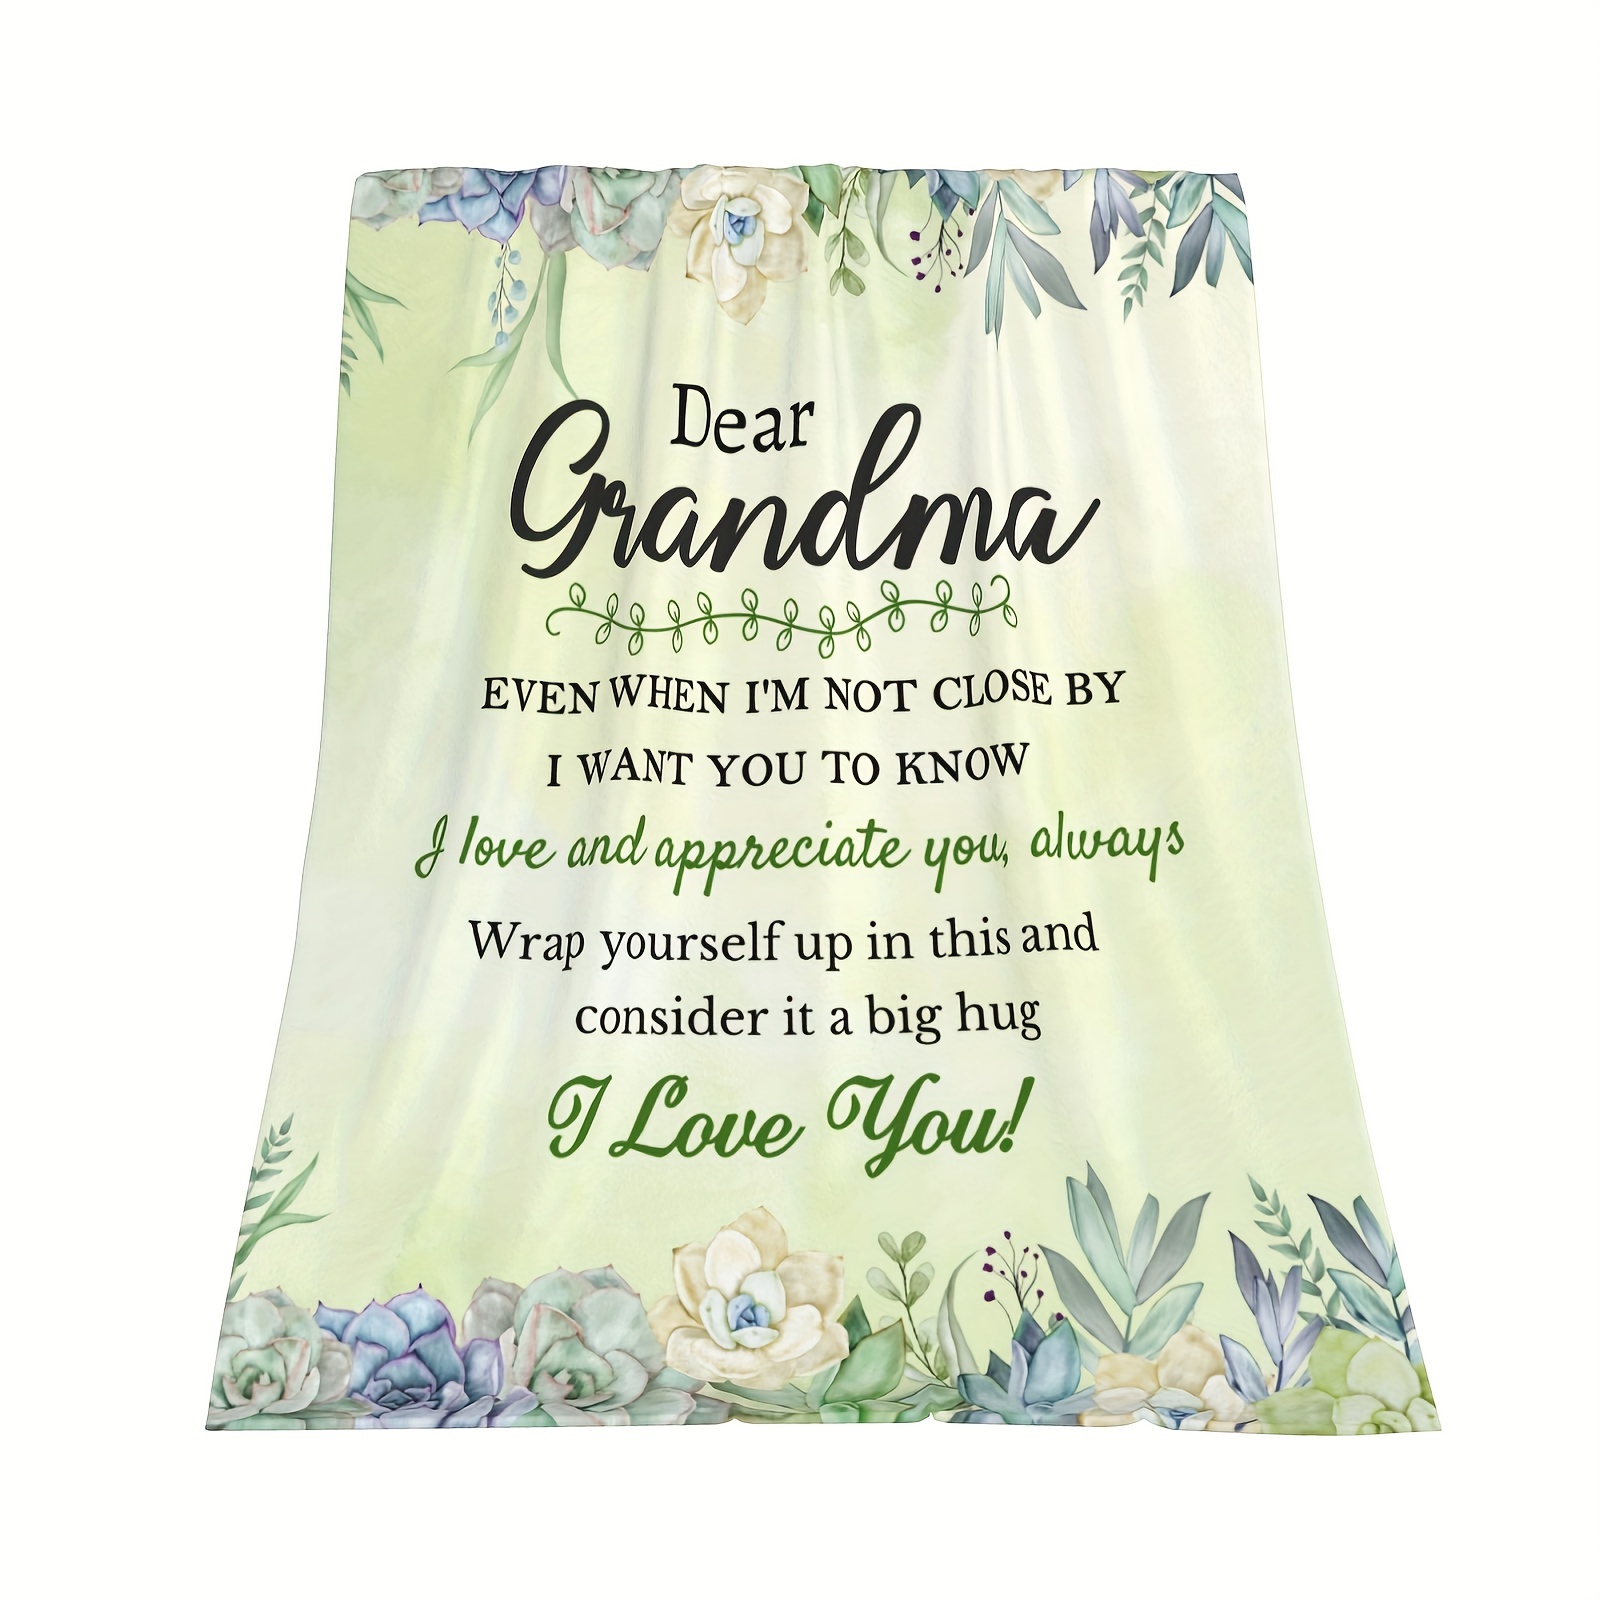 Grandma Gifts, Gifts For Grandma, Grandma Birthday Gifts, Great Grandma  Gifts, Best Grandma Gifts,Grandma Gifts From Grandchildren,Birthday Gifts  For